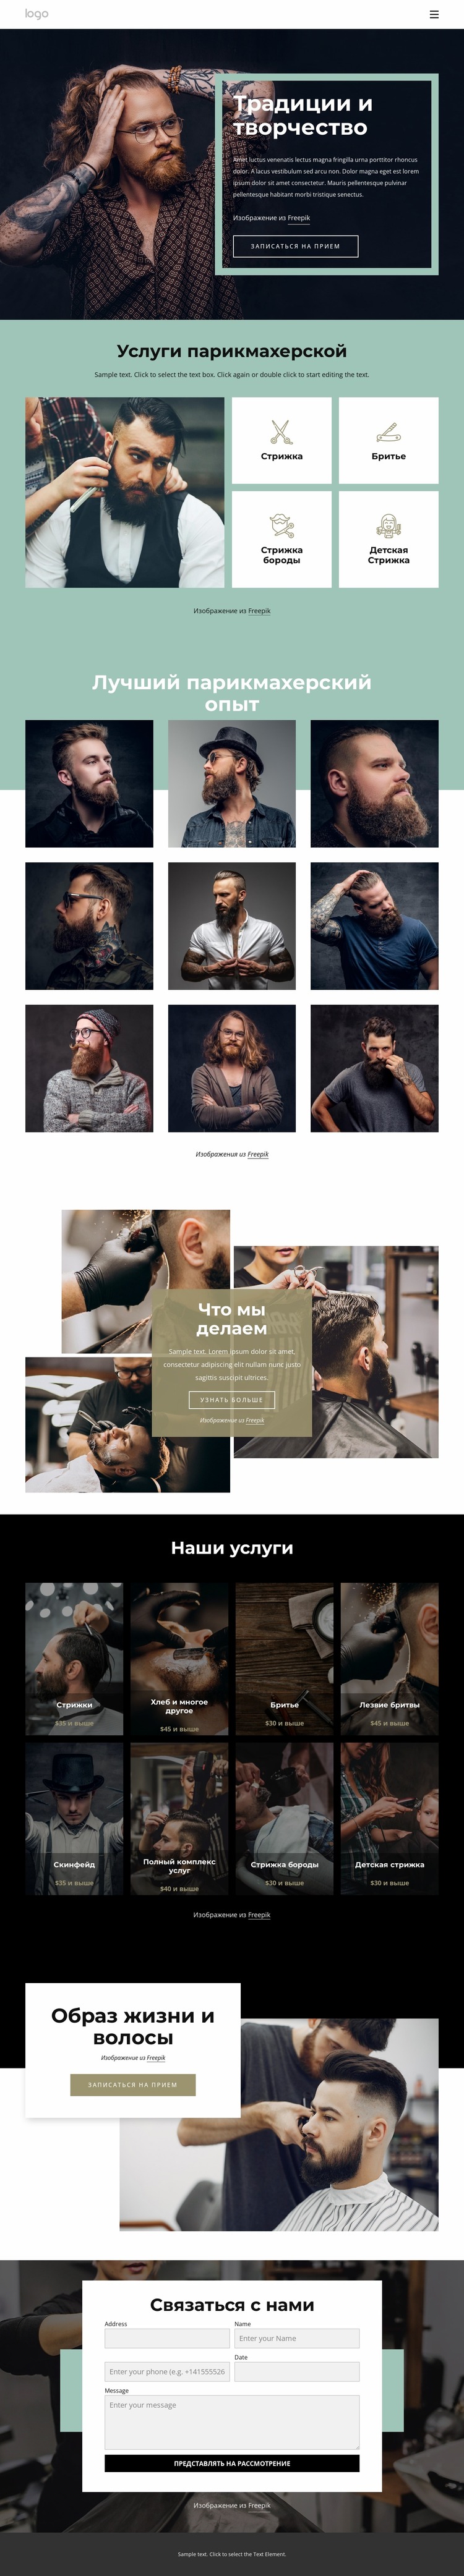 Общественный парикмахерский салон Шаблон Joomla